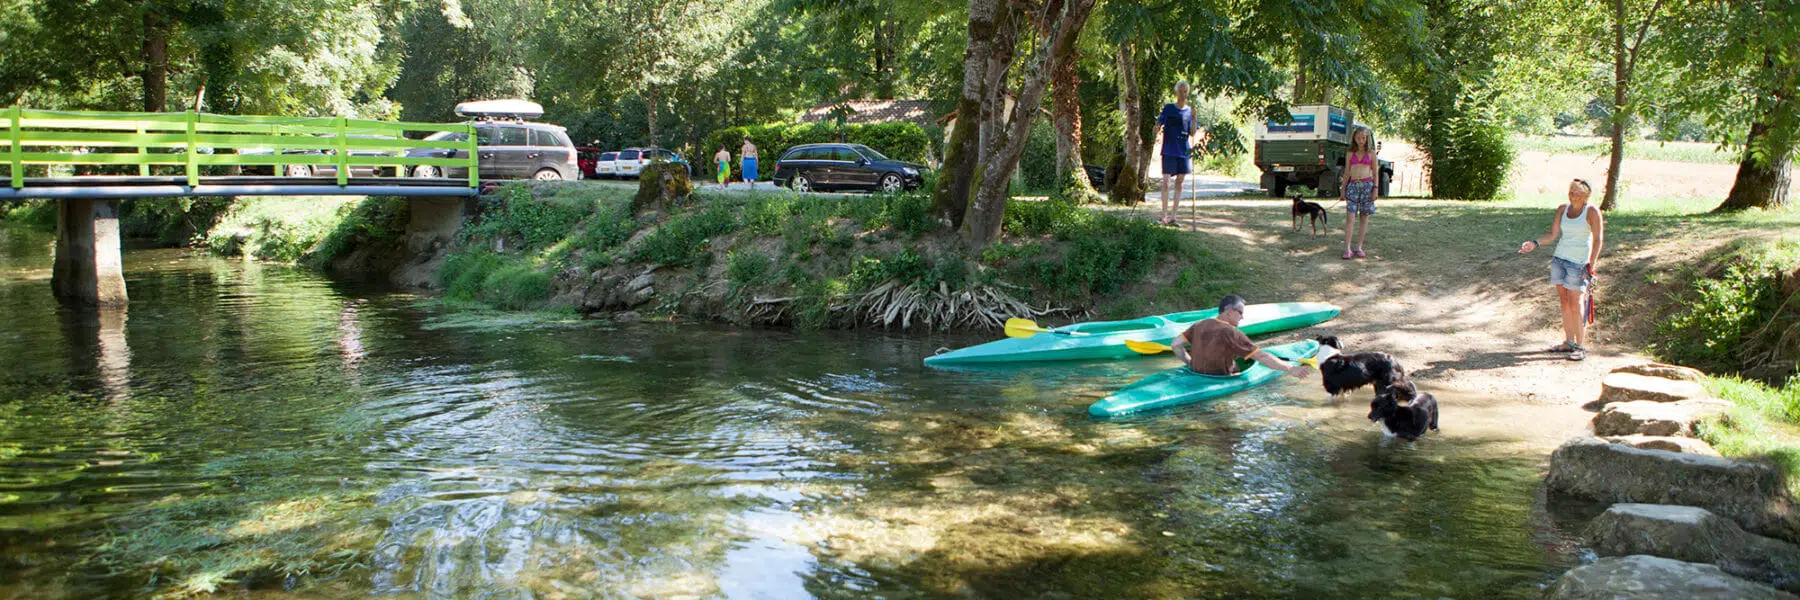 Balade canoe Céou au camping en Dordogne